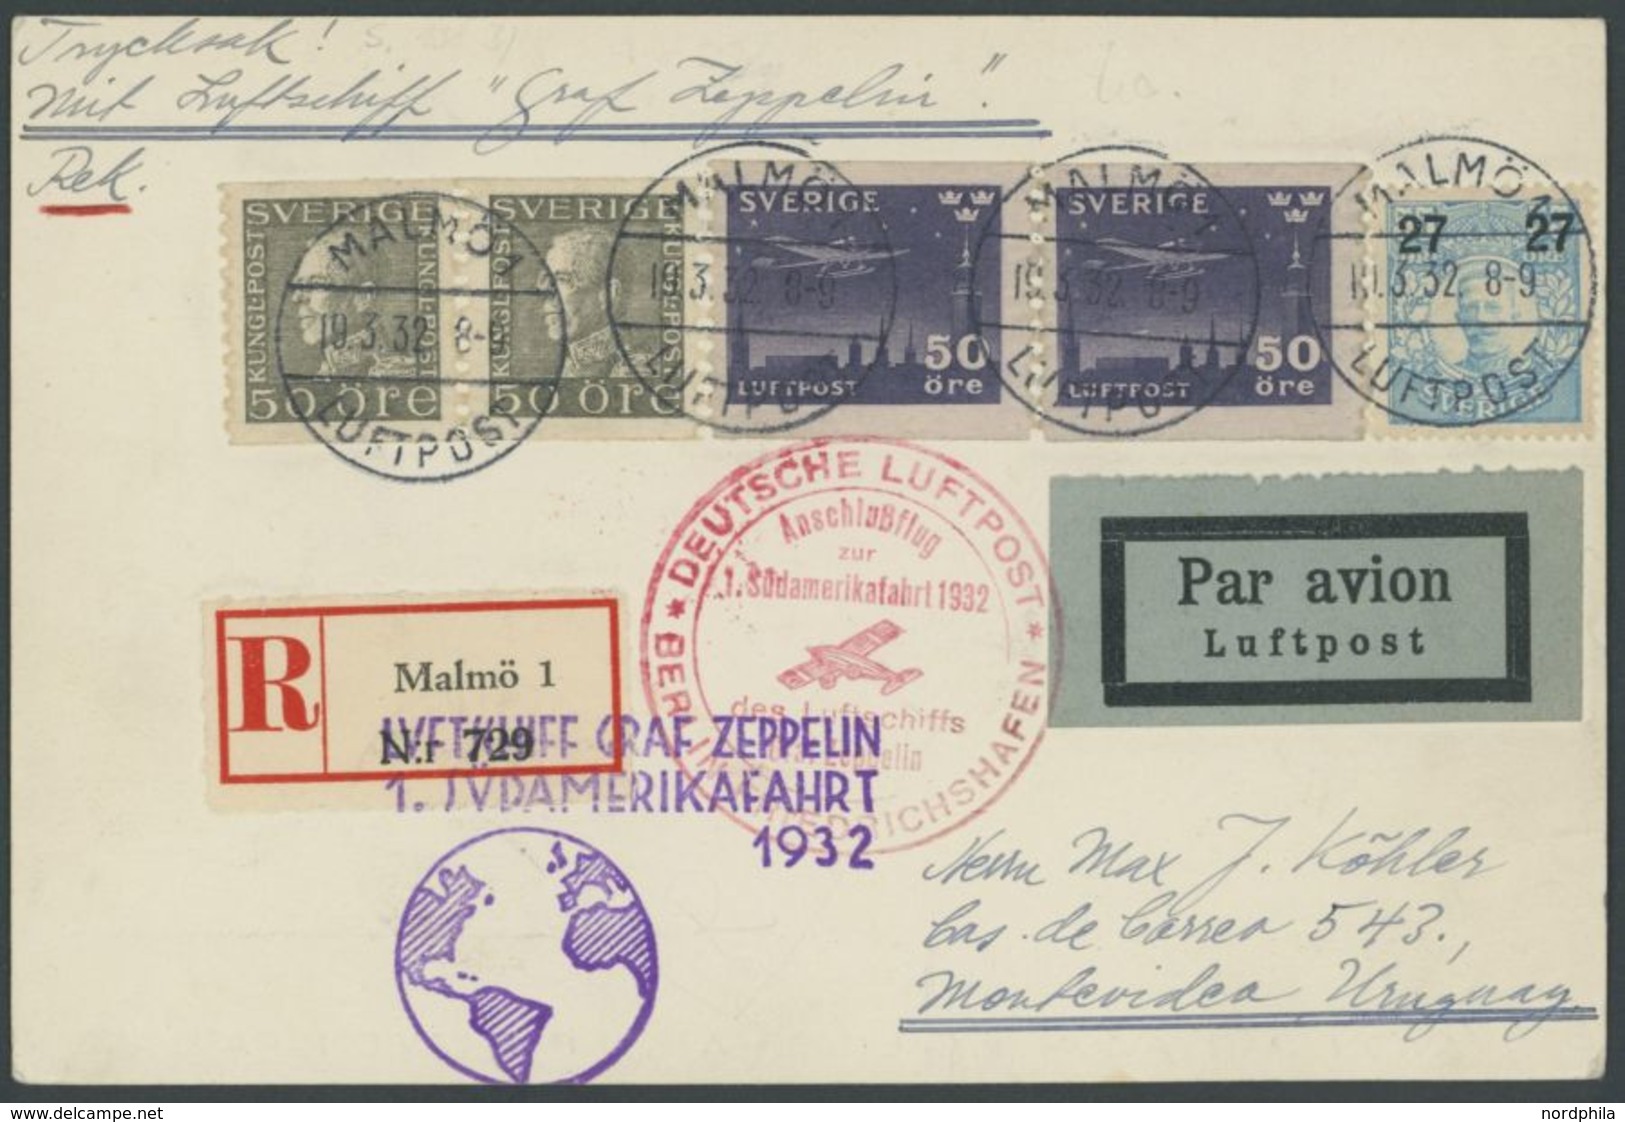 Schweden: 1932, 1, Südamerikafahrt, Einschreibkarte, Pracht -> Automatically Generated Translation: Sweden: 1932, "1, So - Airmail & Zeppelin